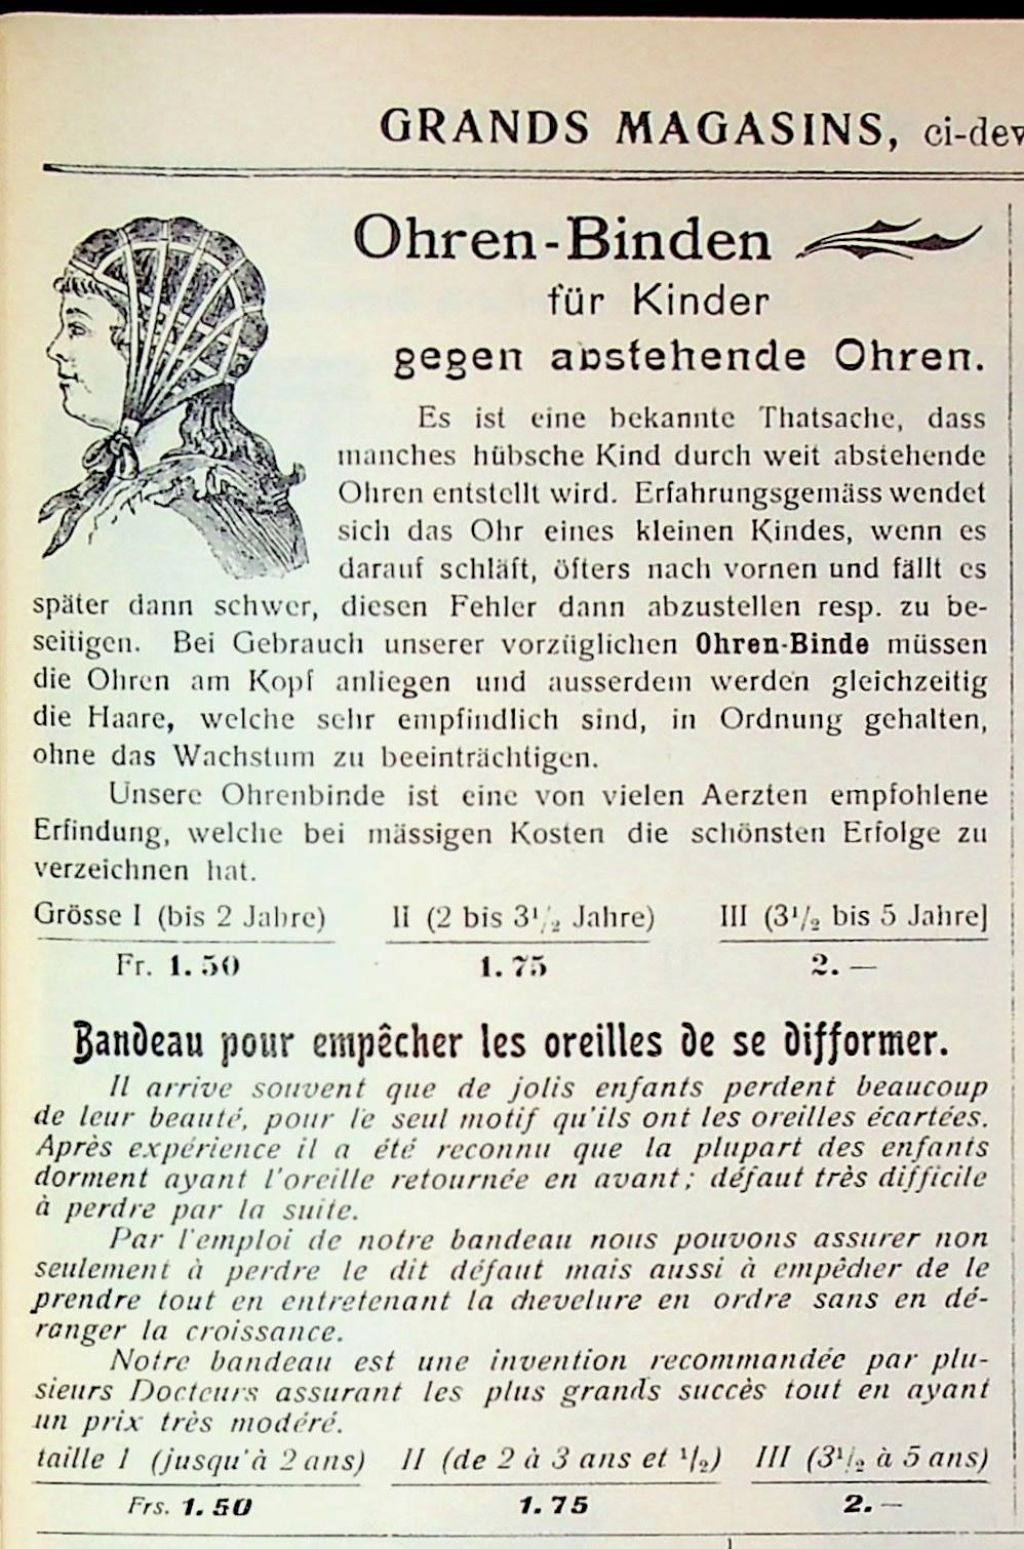 Teil einer Seite, die schwarz-weiss bedruckt ist mit verschiedenen Werbetexten. Oben links ist eine Zeichnung zu sehen eines Kindes, das eine eigenartige Kopfbedeckung trägt.